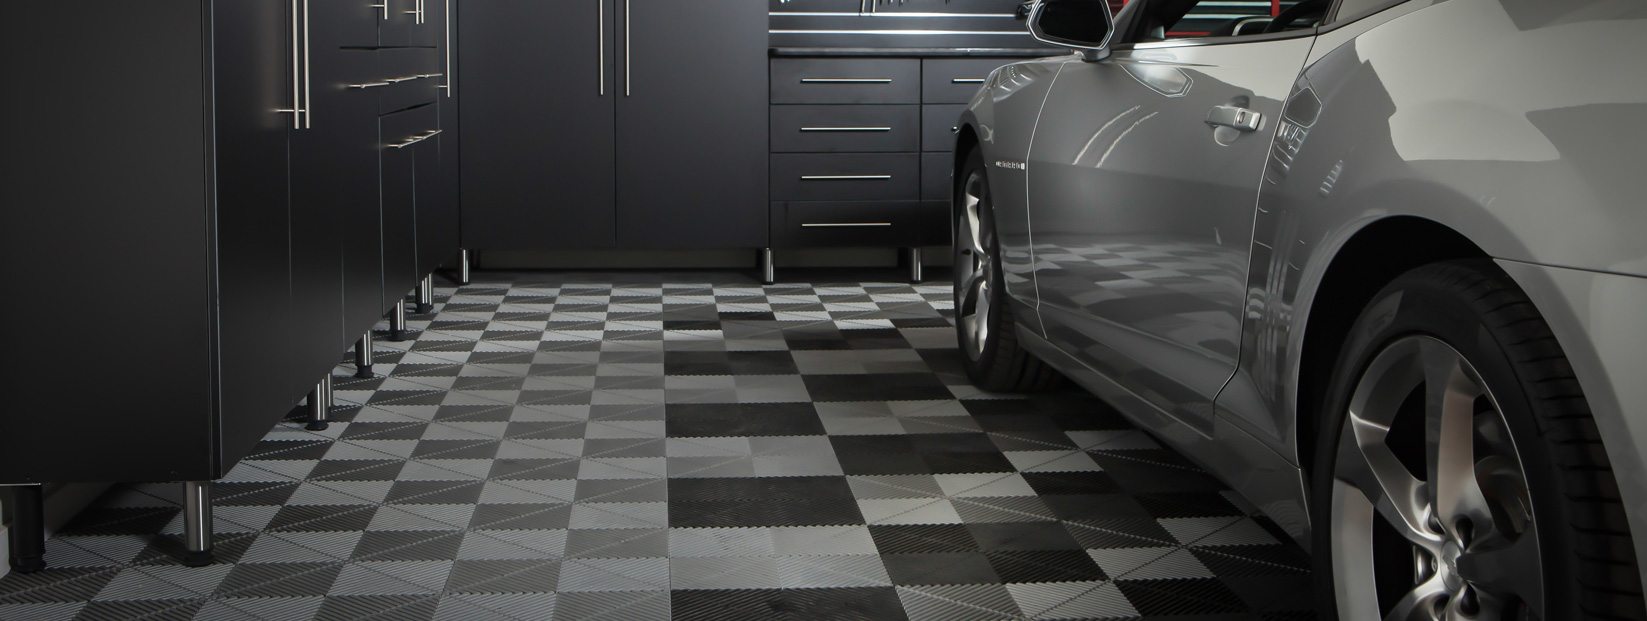 Garage Floor Tiles Bentonville